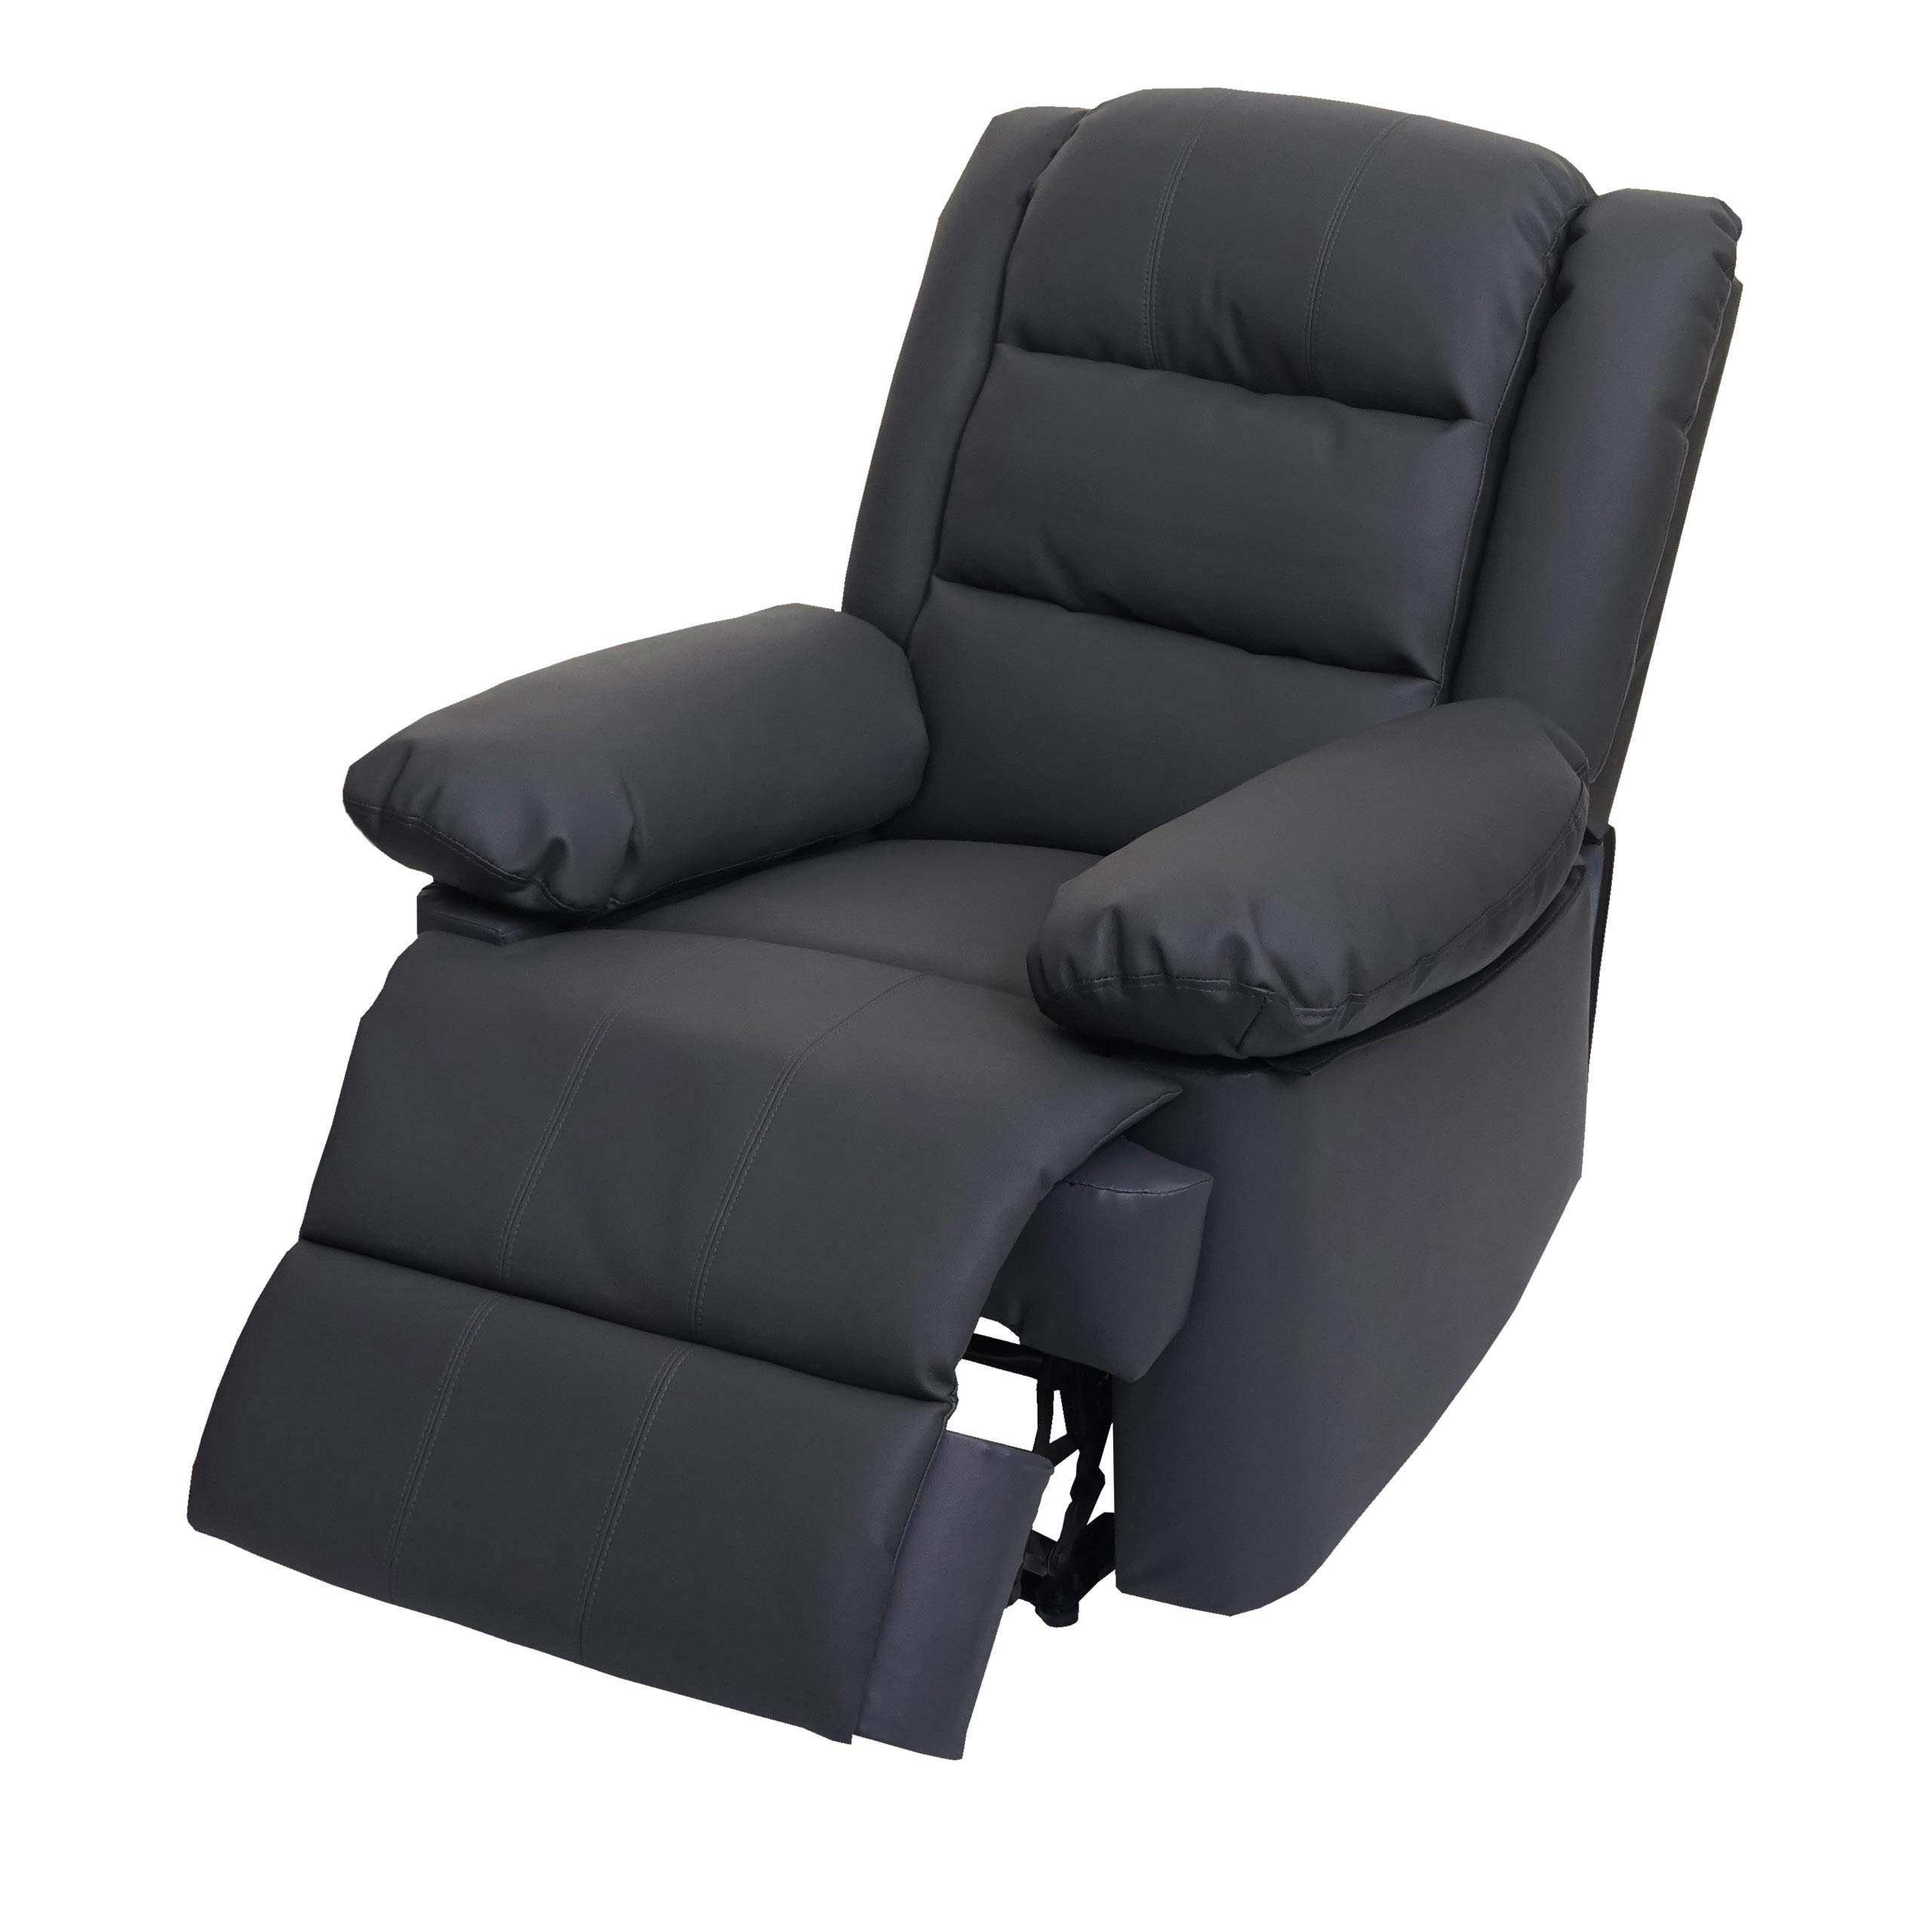 Verstellbare MCW MCW-G15, 165 cm, Rückenfläche, Fußstütze grau verstellbar, Liegefunktion Liegefläche: TV-Sessel